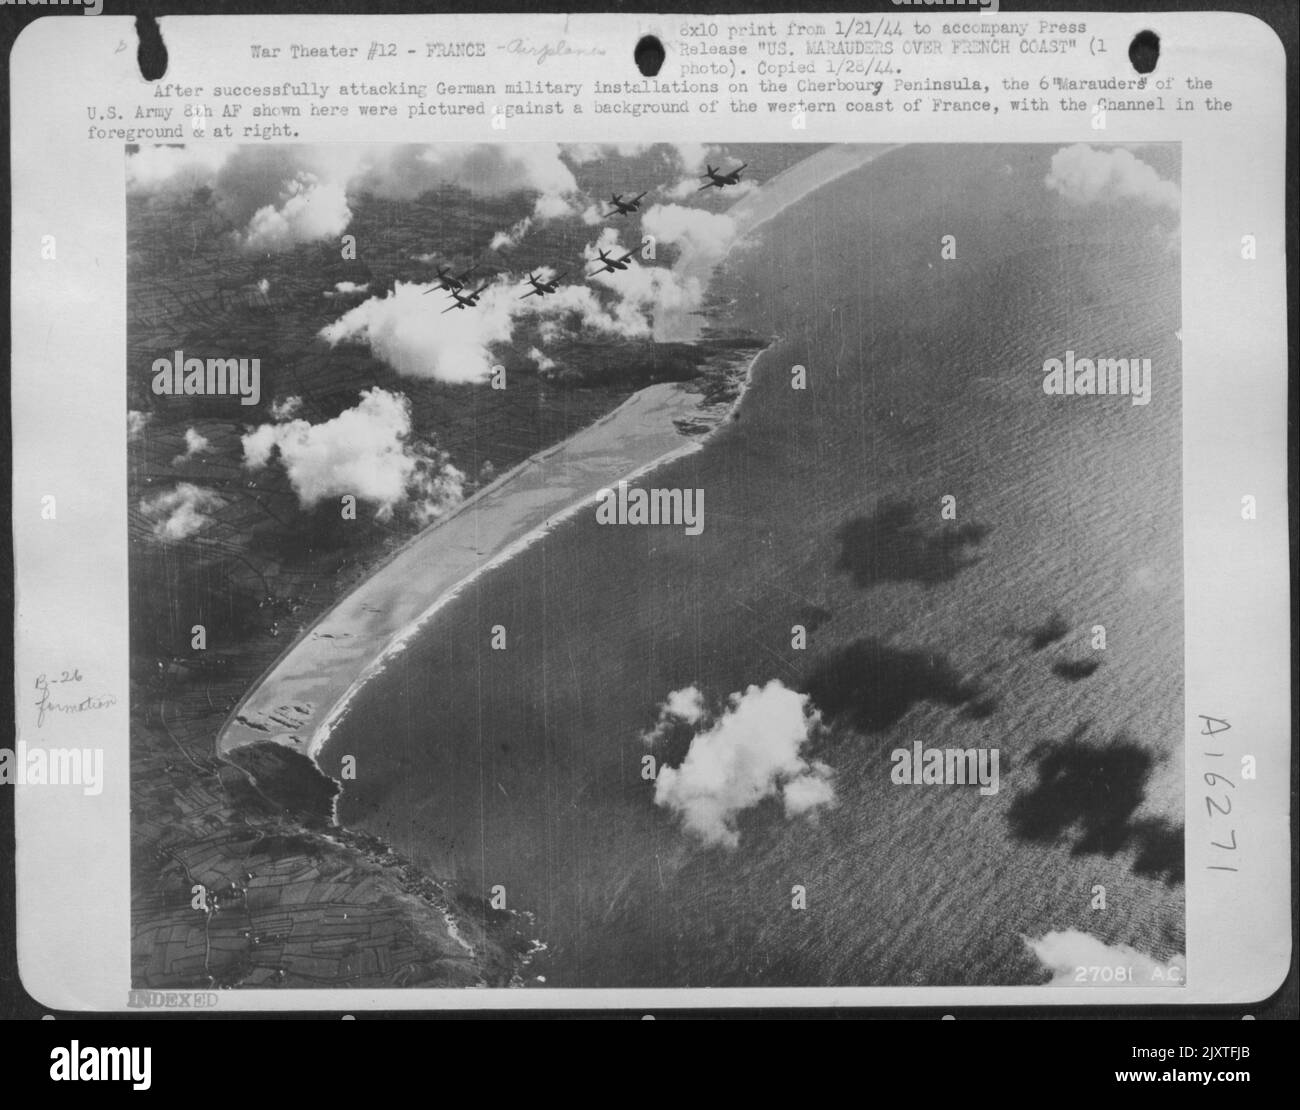 Nach dem erfolgreichen Angriff auf deutsche Militäreinrichtungen auf der Cherbourg-Halbinsel wurden die 6 hier gezeigten 'Marodeus' der US-Armee 8. AF vor einem Hintergrund der Westküste Frankreichs mit dem Kanal im Vordergrund & abgebildet Stockfoto